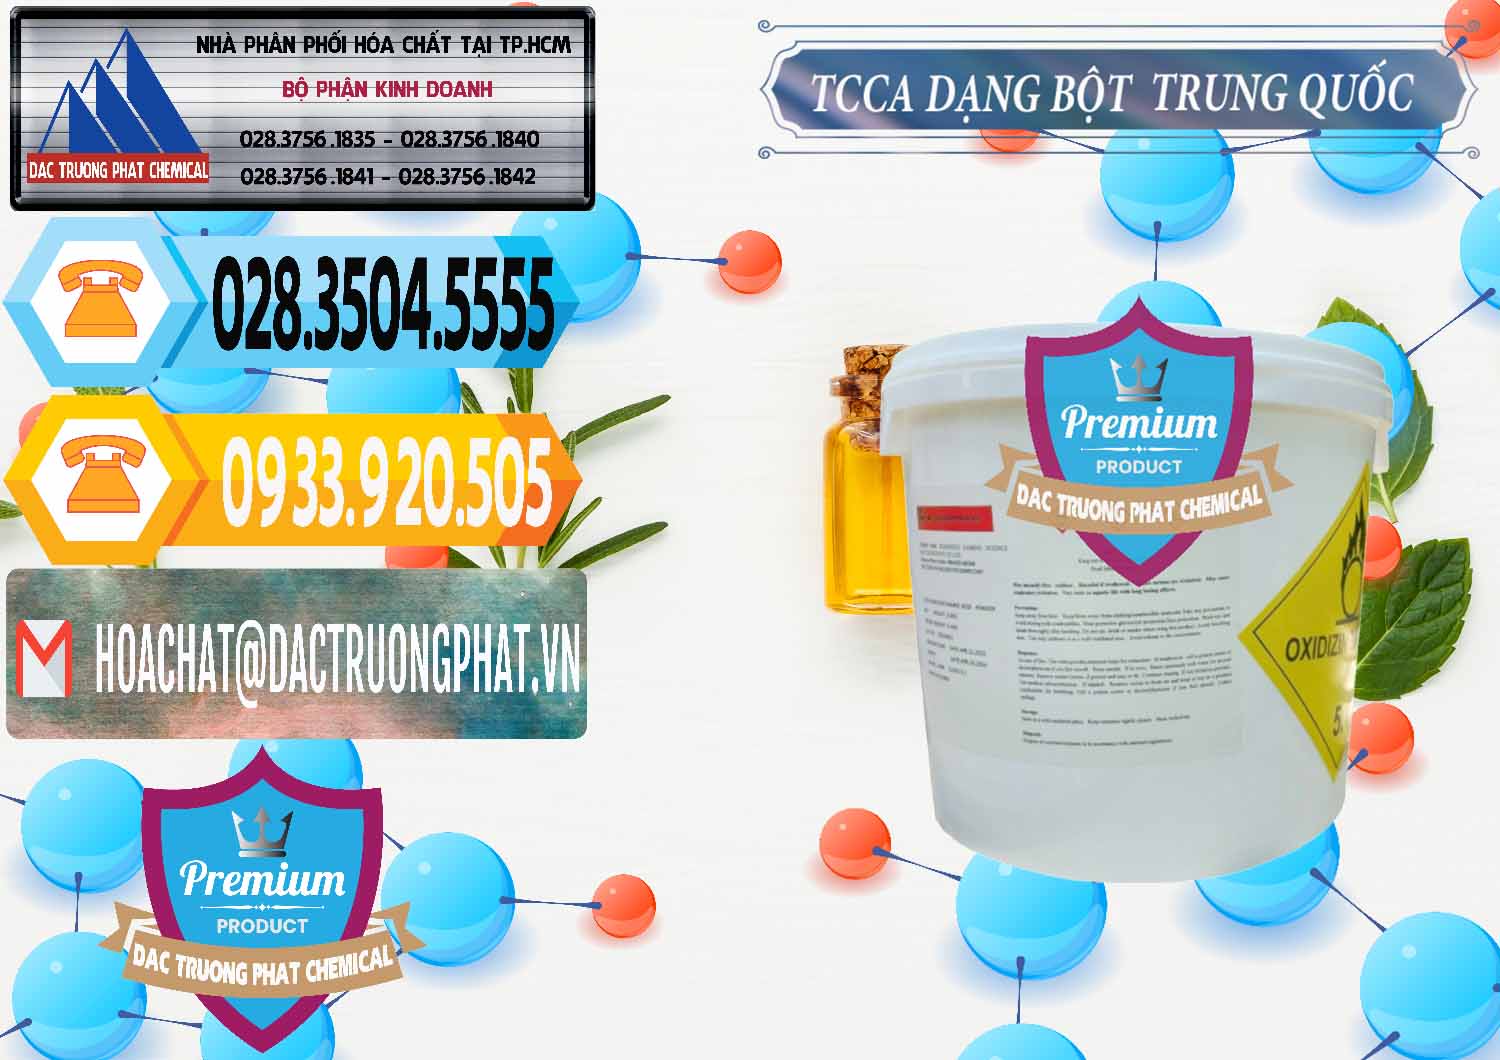 Cty chuyên cung cấp & bán TCCA - Acid Trichloroisocyanuric Dạng Bột Thùng 5kg Trung Quốc China - 0378 - Cty chuyên bán và cung cấp hóa chất tại TP.HCM - hoachattayrua.net